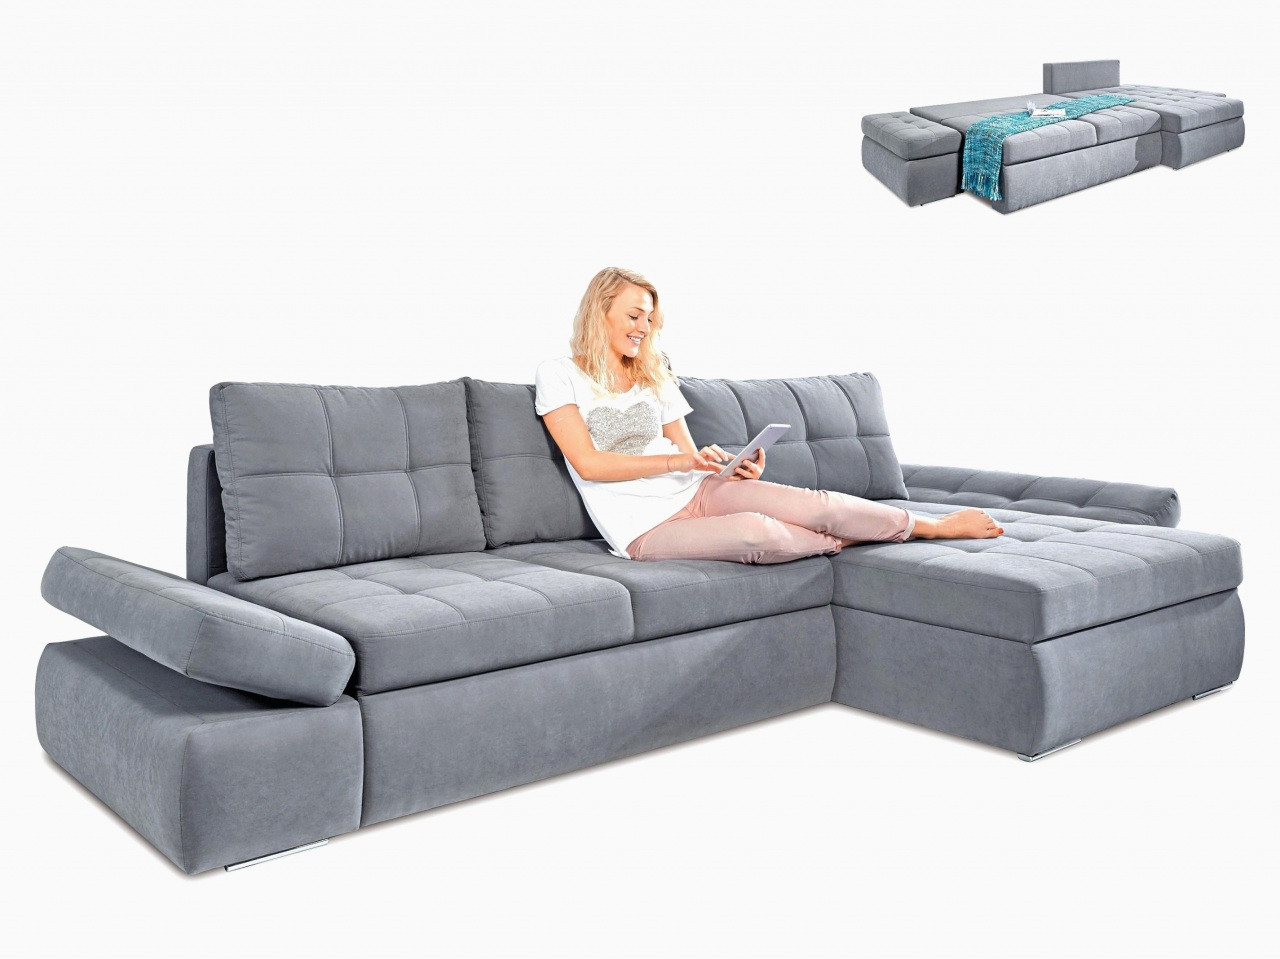 Sofa Mit Recamiere
 Sofa Doppel Recamiere Komfort Sofa Mit Recamiere Und